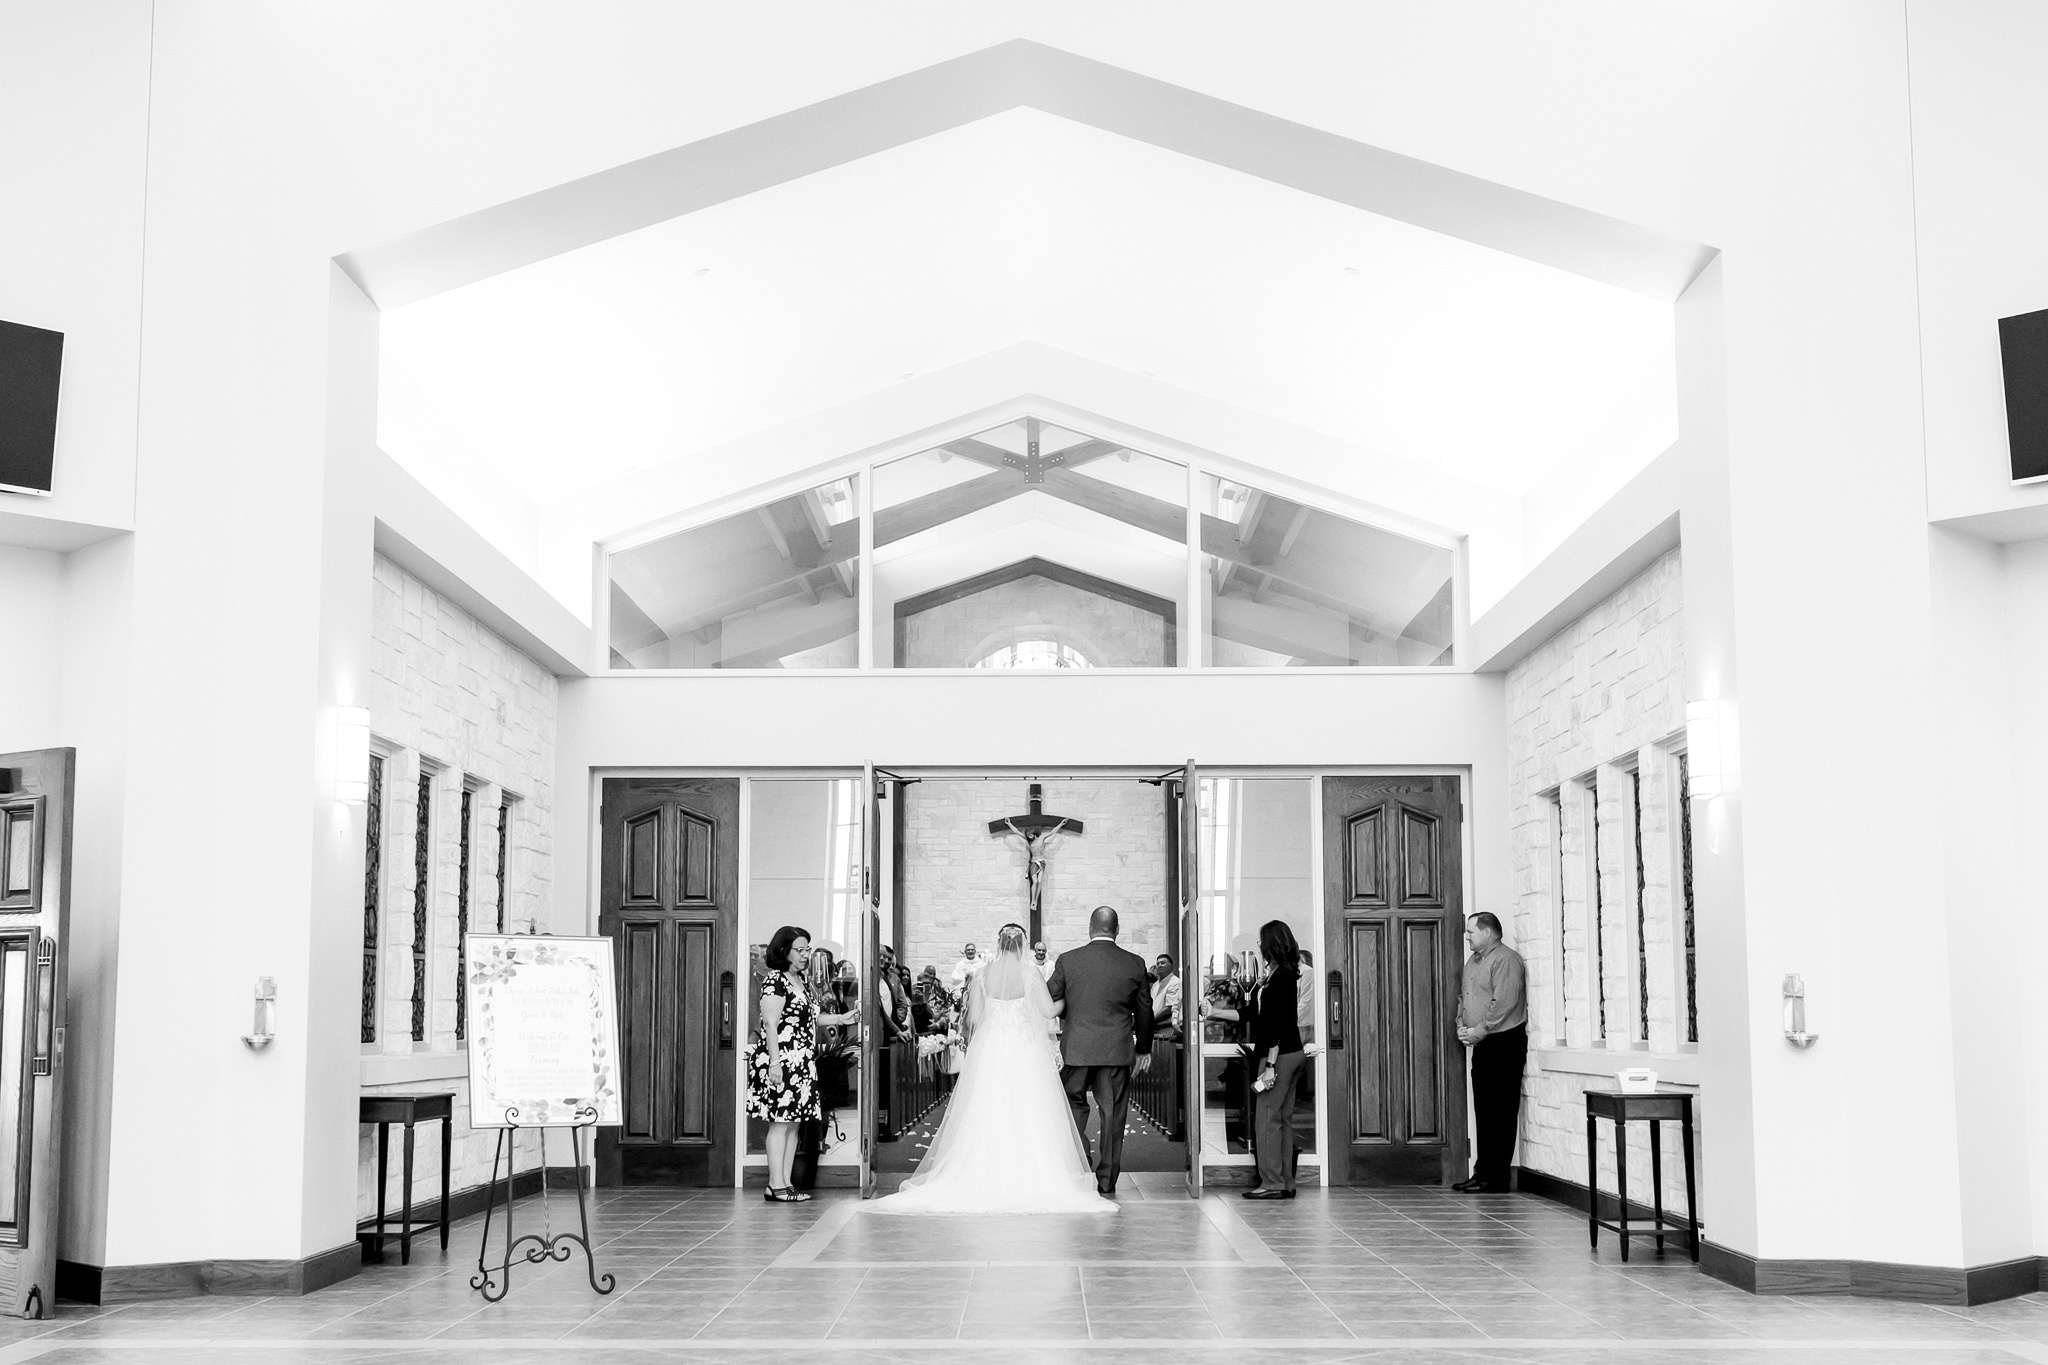 A Wedding at St. Jerome Catholic Church in Adkins, TX by Dawn Elizabeth Studios, San Antonio Wedding Photographer